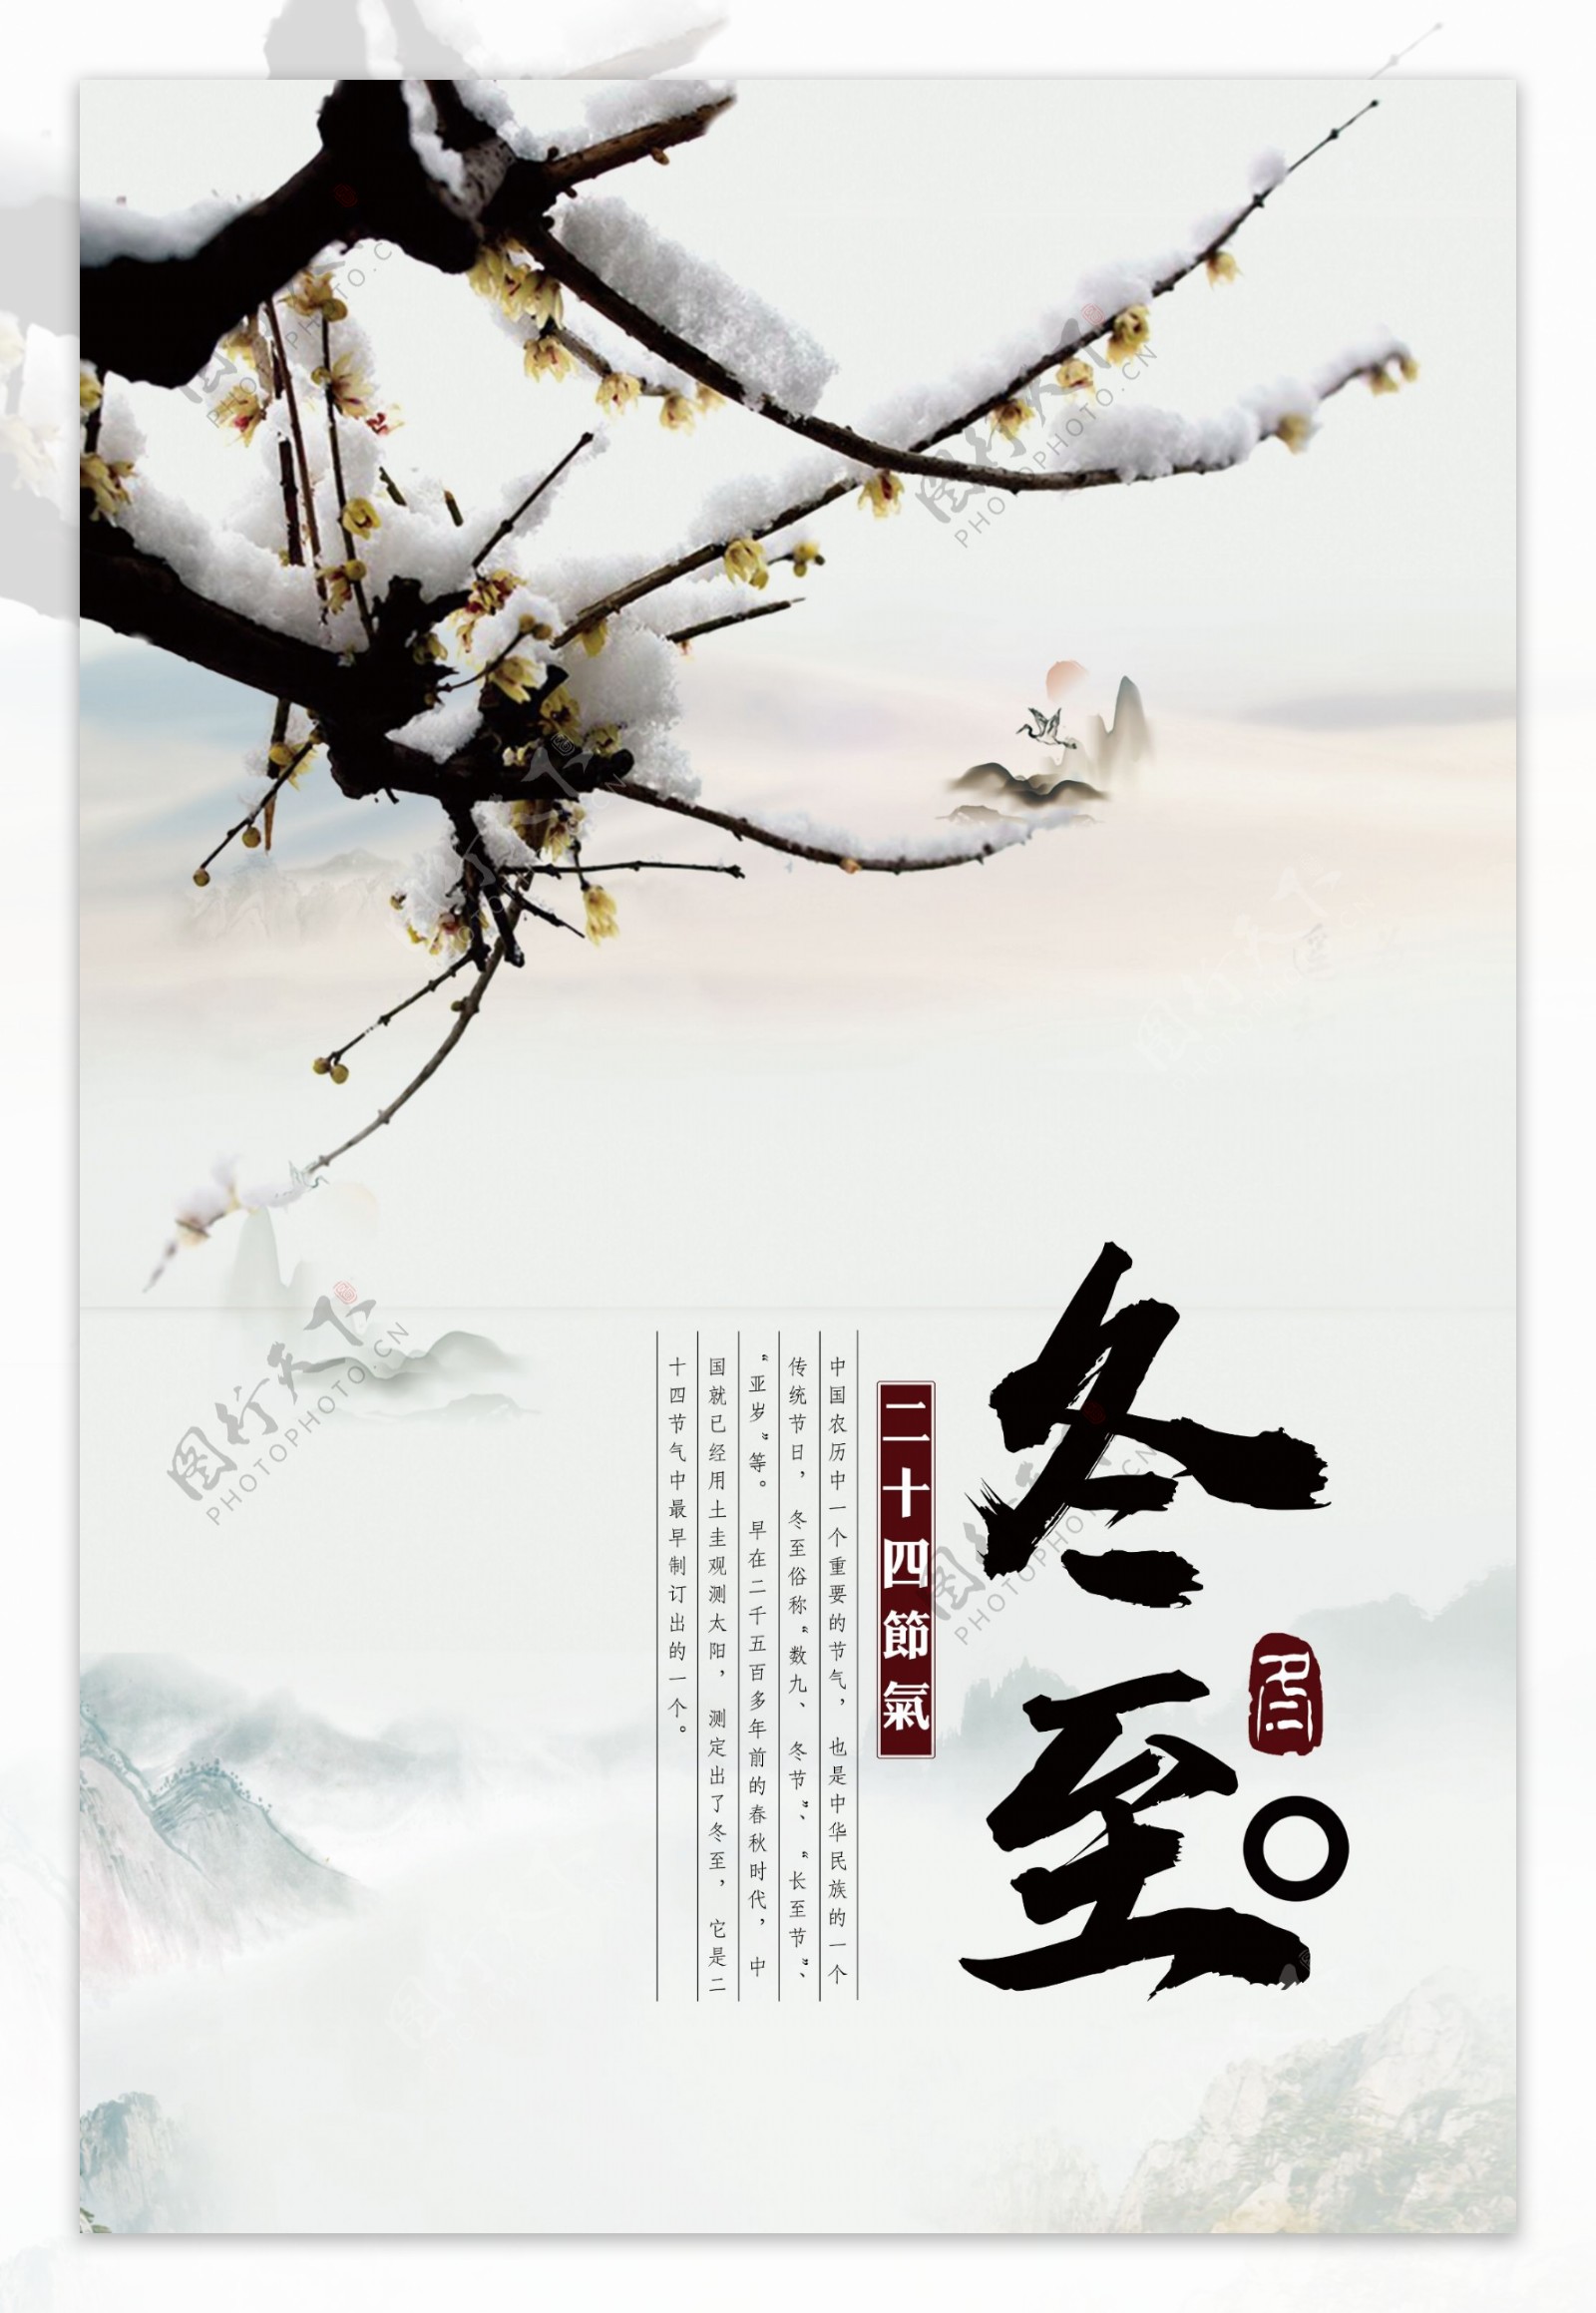 中国风2017冬至海报设计